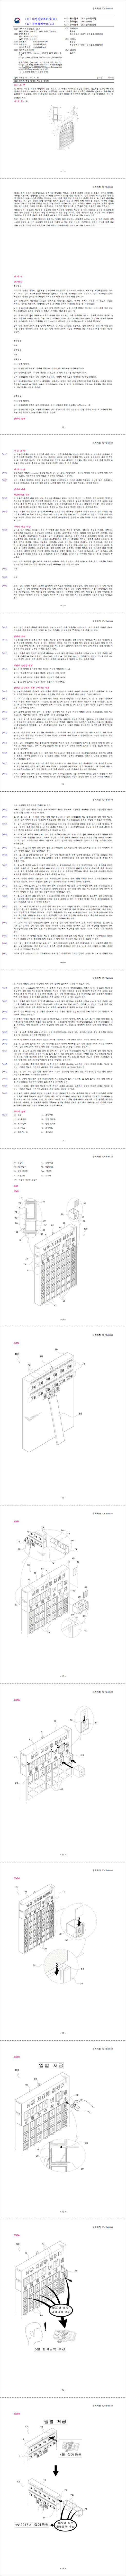 특허 제10-1846538호(학생용 저금통 캘린더, 유관식, 